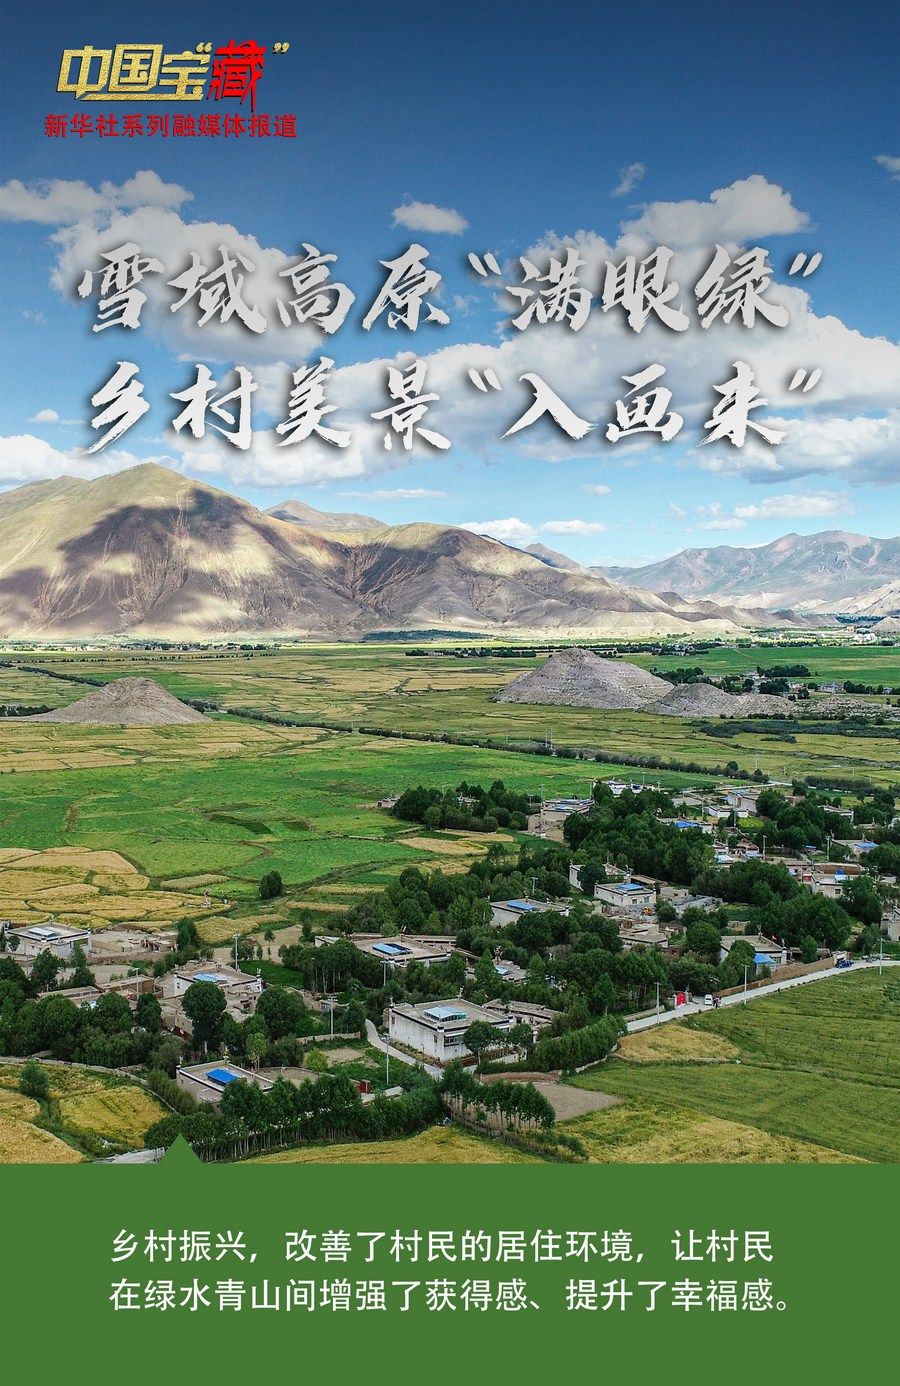 中国宝藏雪域高原满眼绿乡村美景入画来